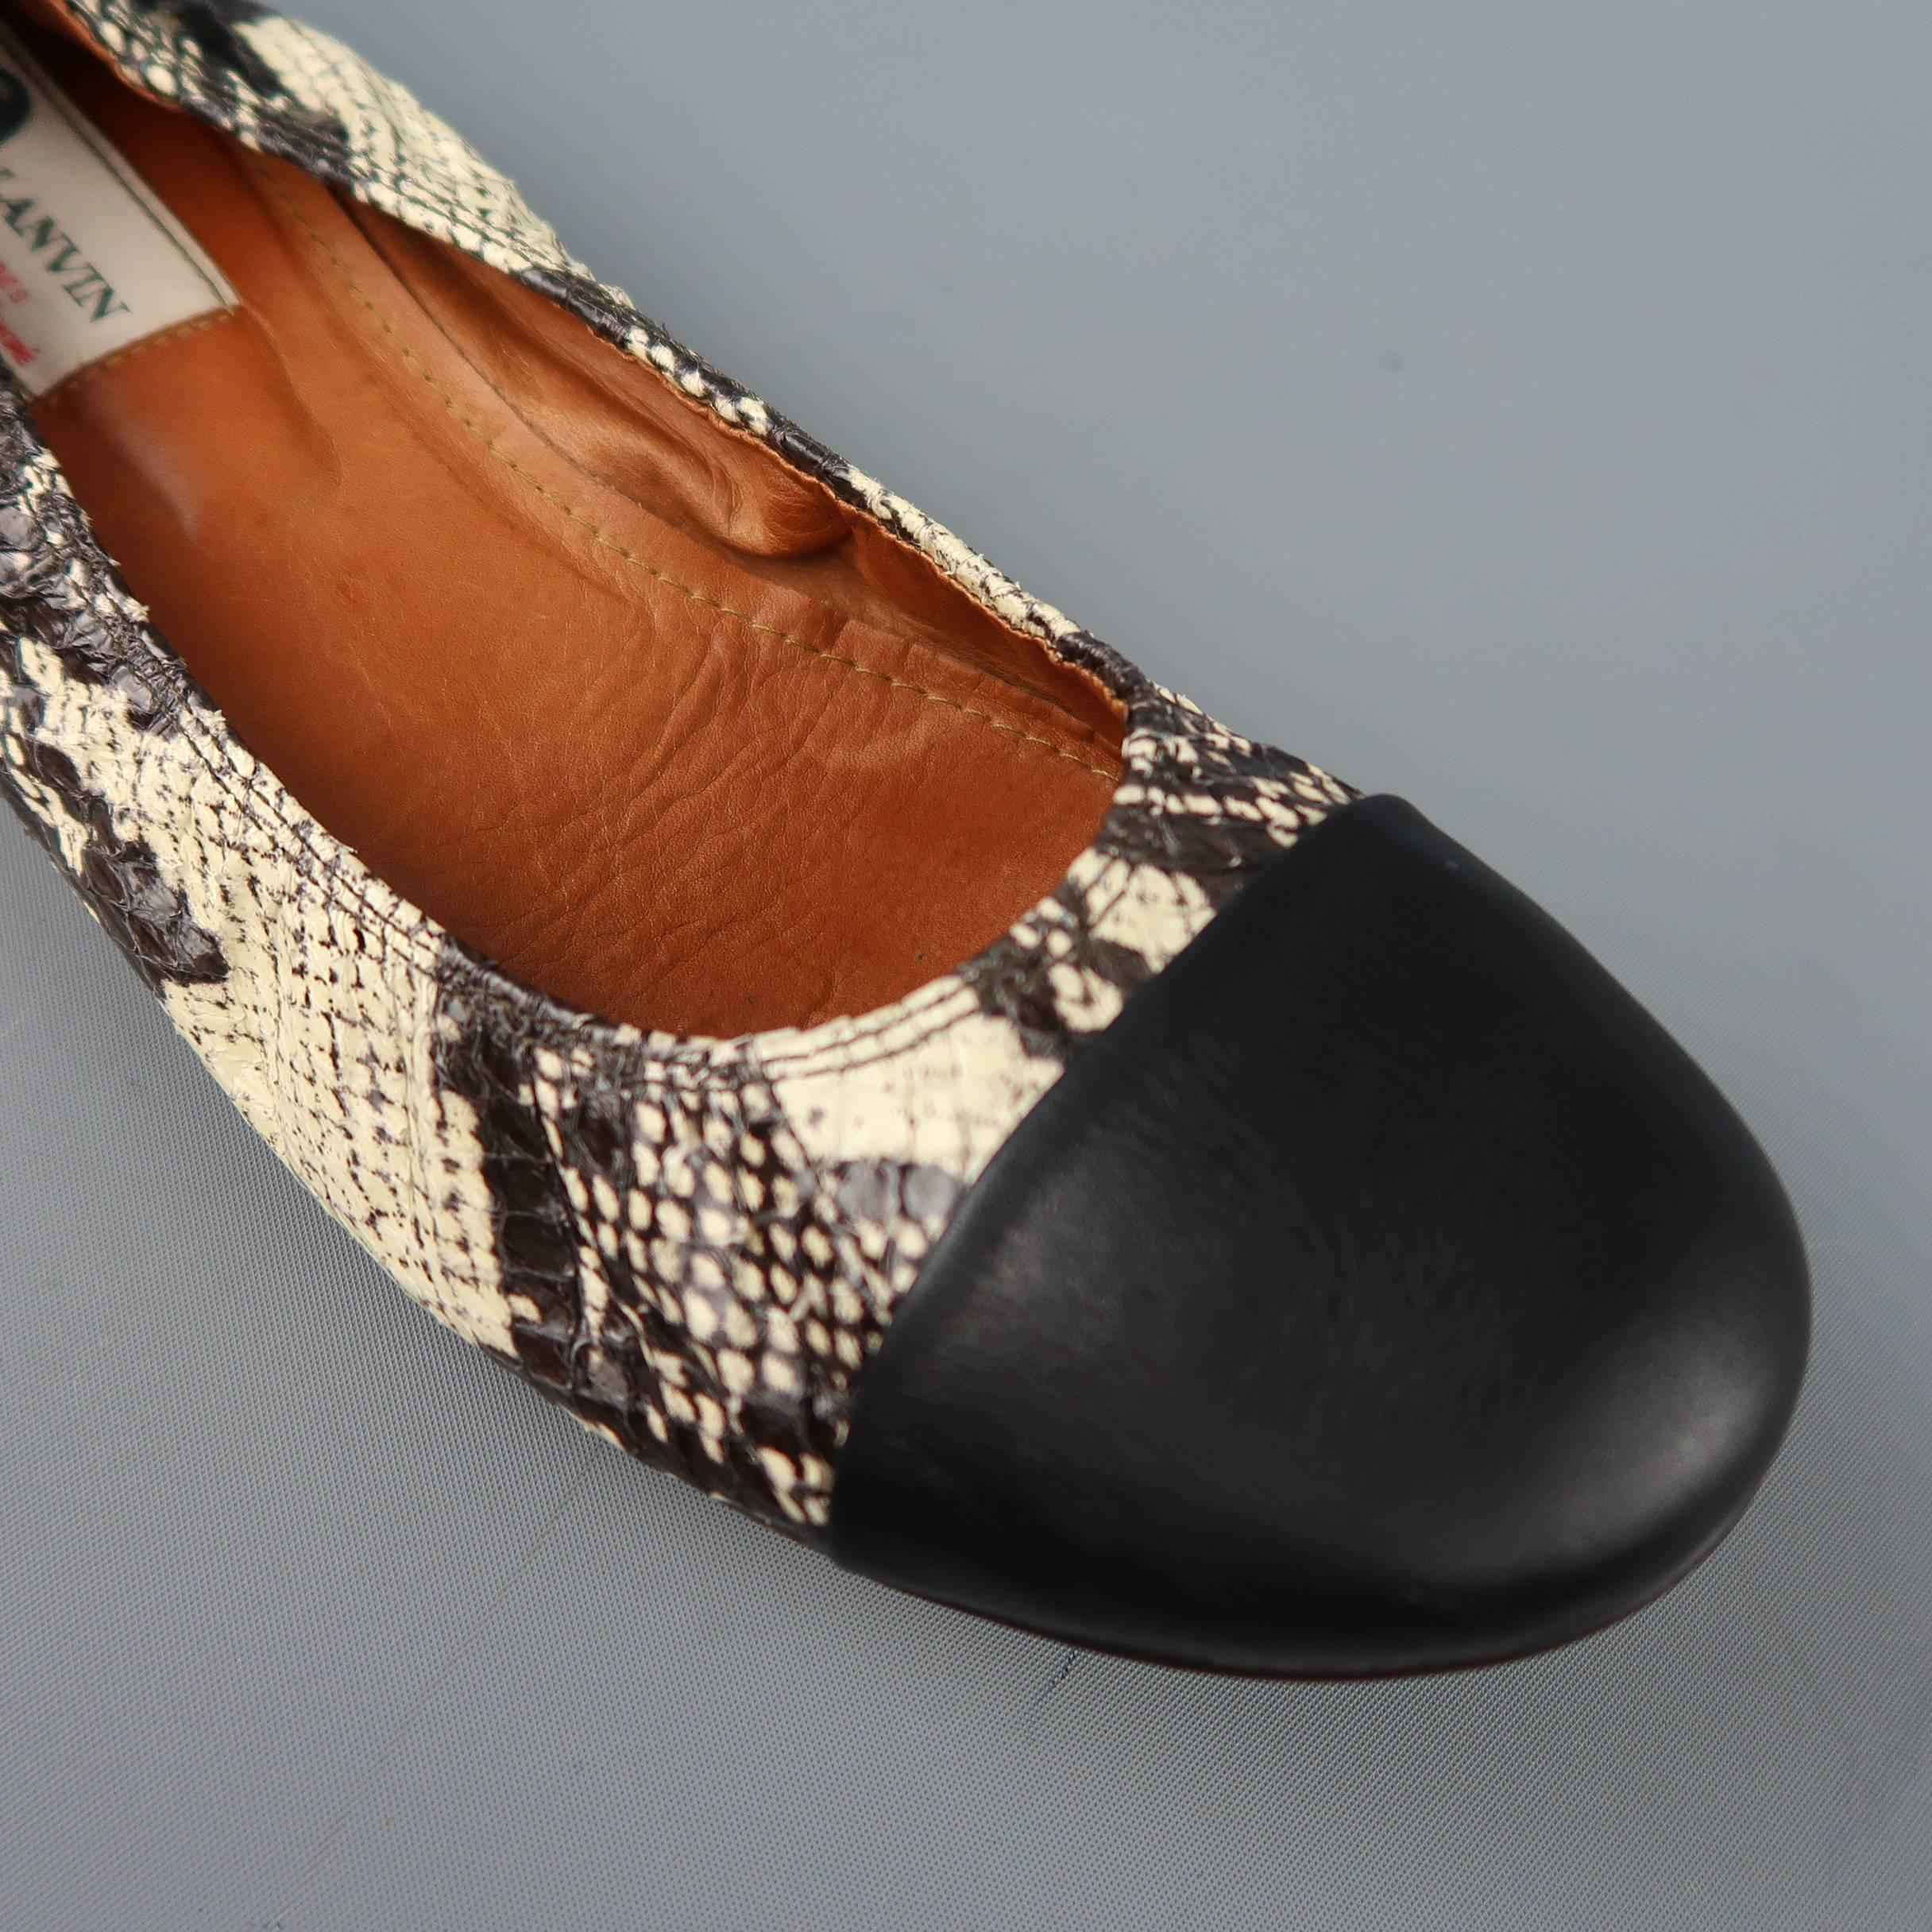 Women's LANVIN Flats Size 10.5 Beige & Black Snake Skin Cap Toe Ballet Shoes